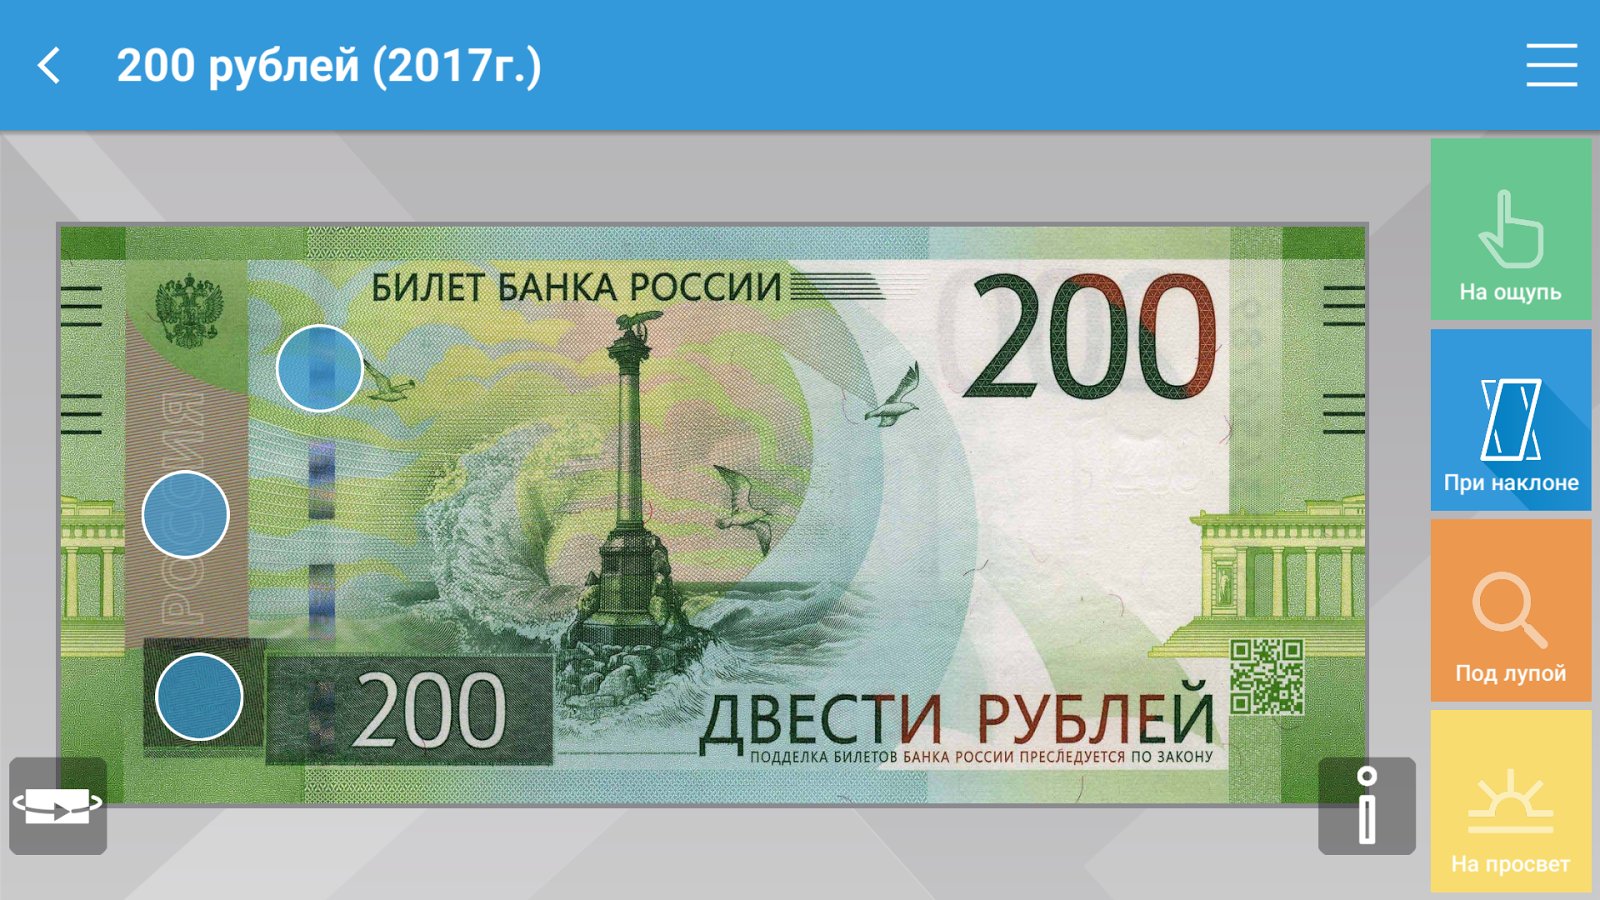 200 рублей быстро. Купюра 200 рублей. 200 Рублей купюра 2017. Двести рублей 2017. 200 Рублей банкнота.